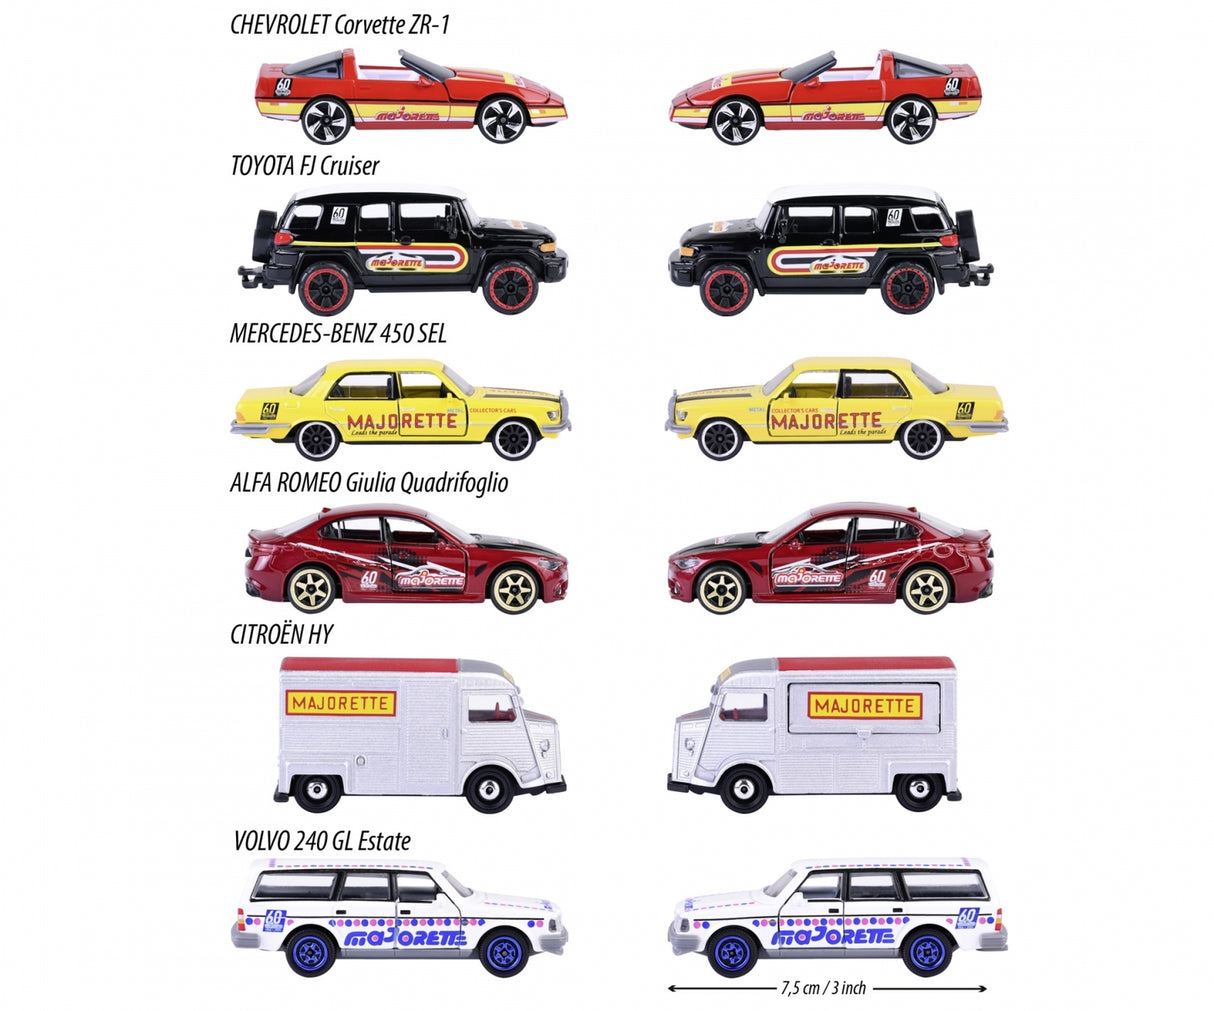 Majorette 60th Anniversary Premium Cars - Assorted (1) - Hobbytech Toys